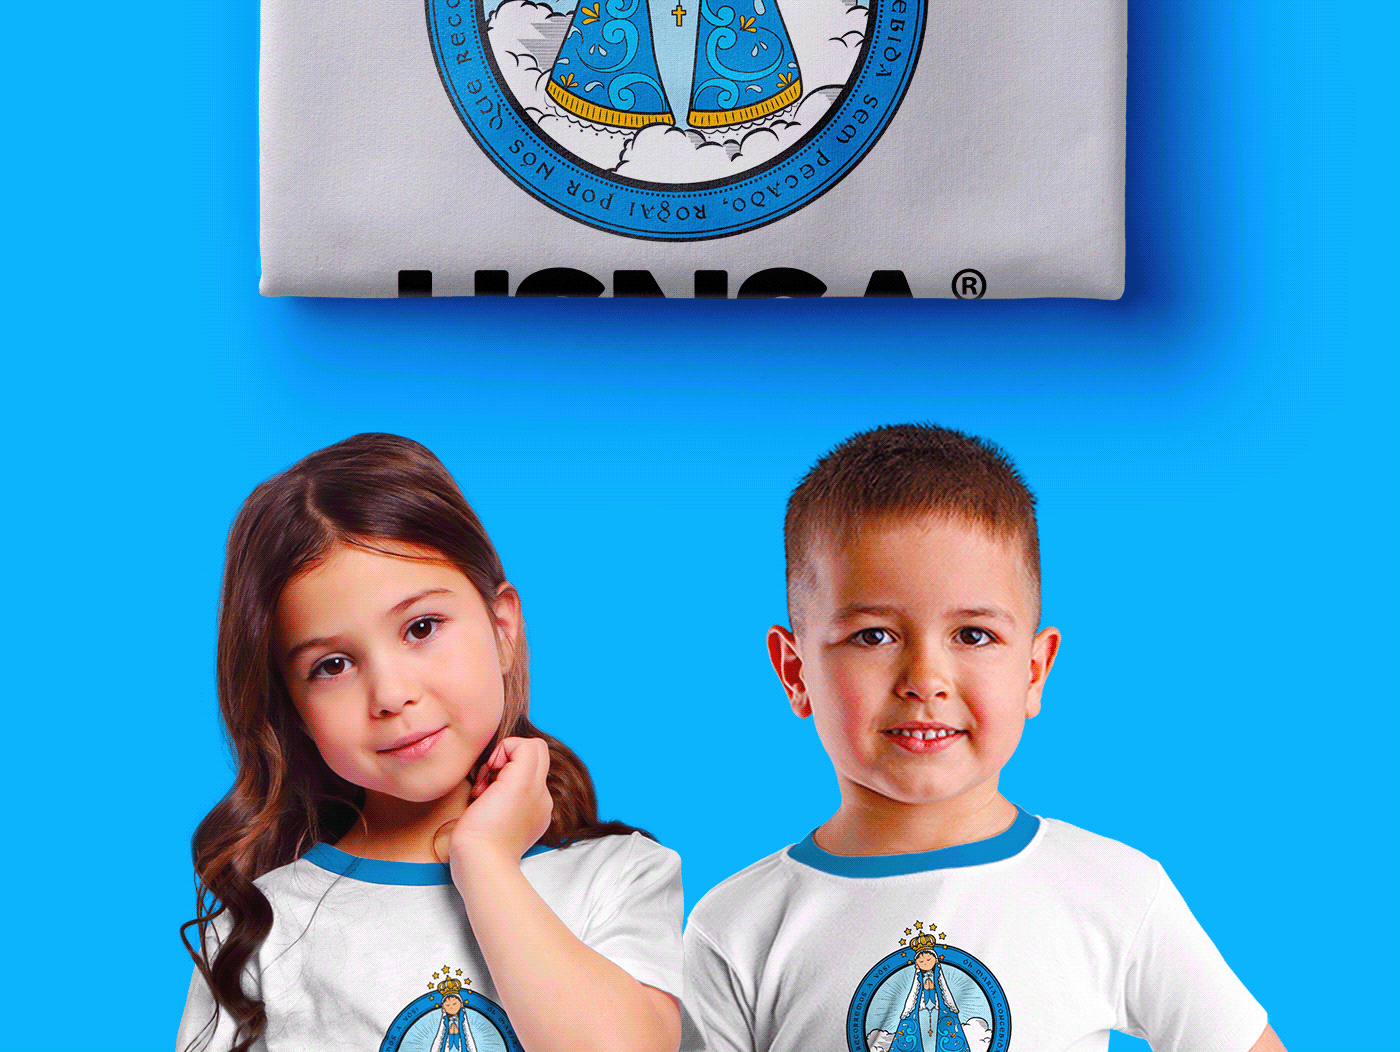 Creche Escola criança identity logo Logotipo marca Nova marca publicidade school unidade social